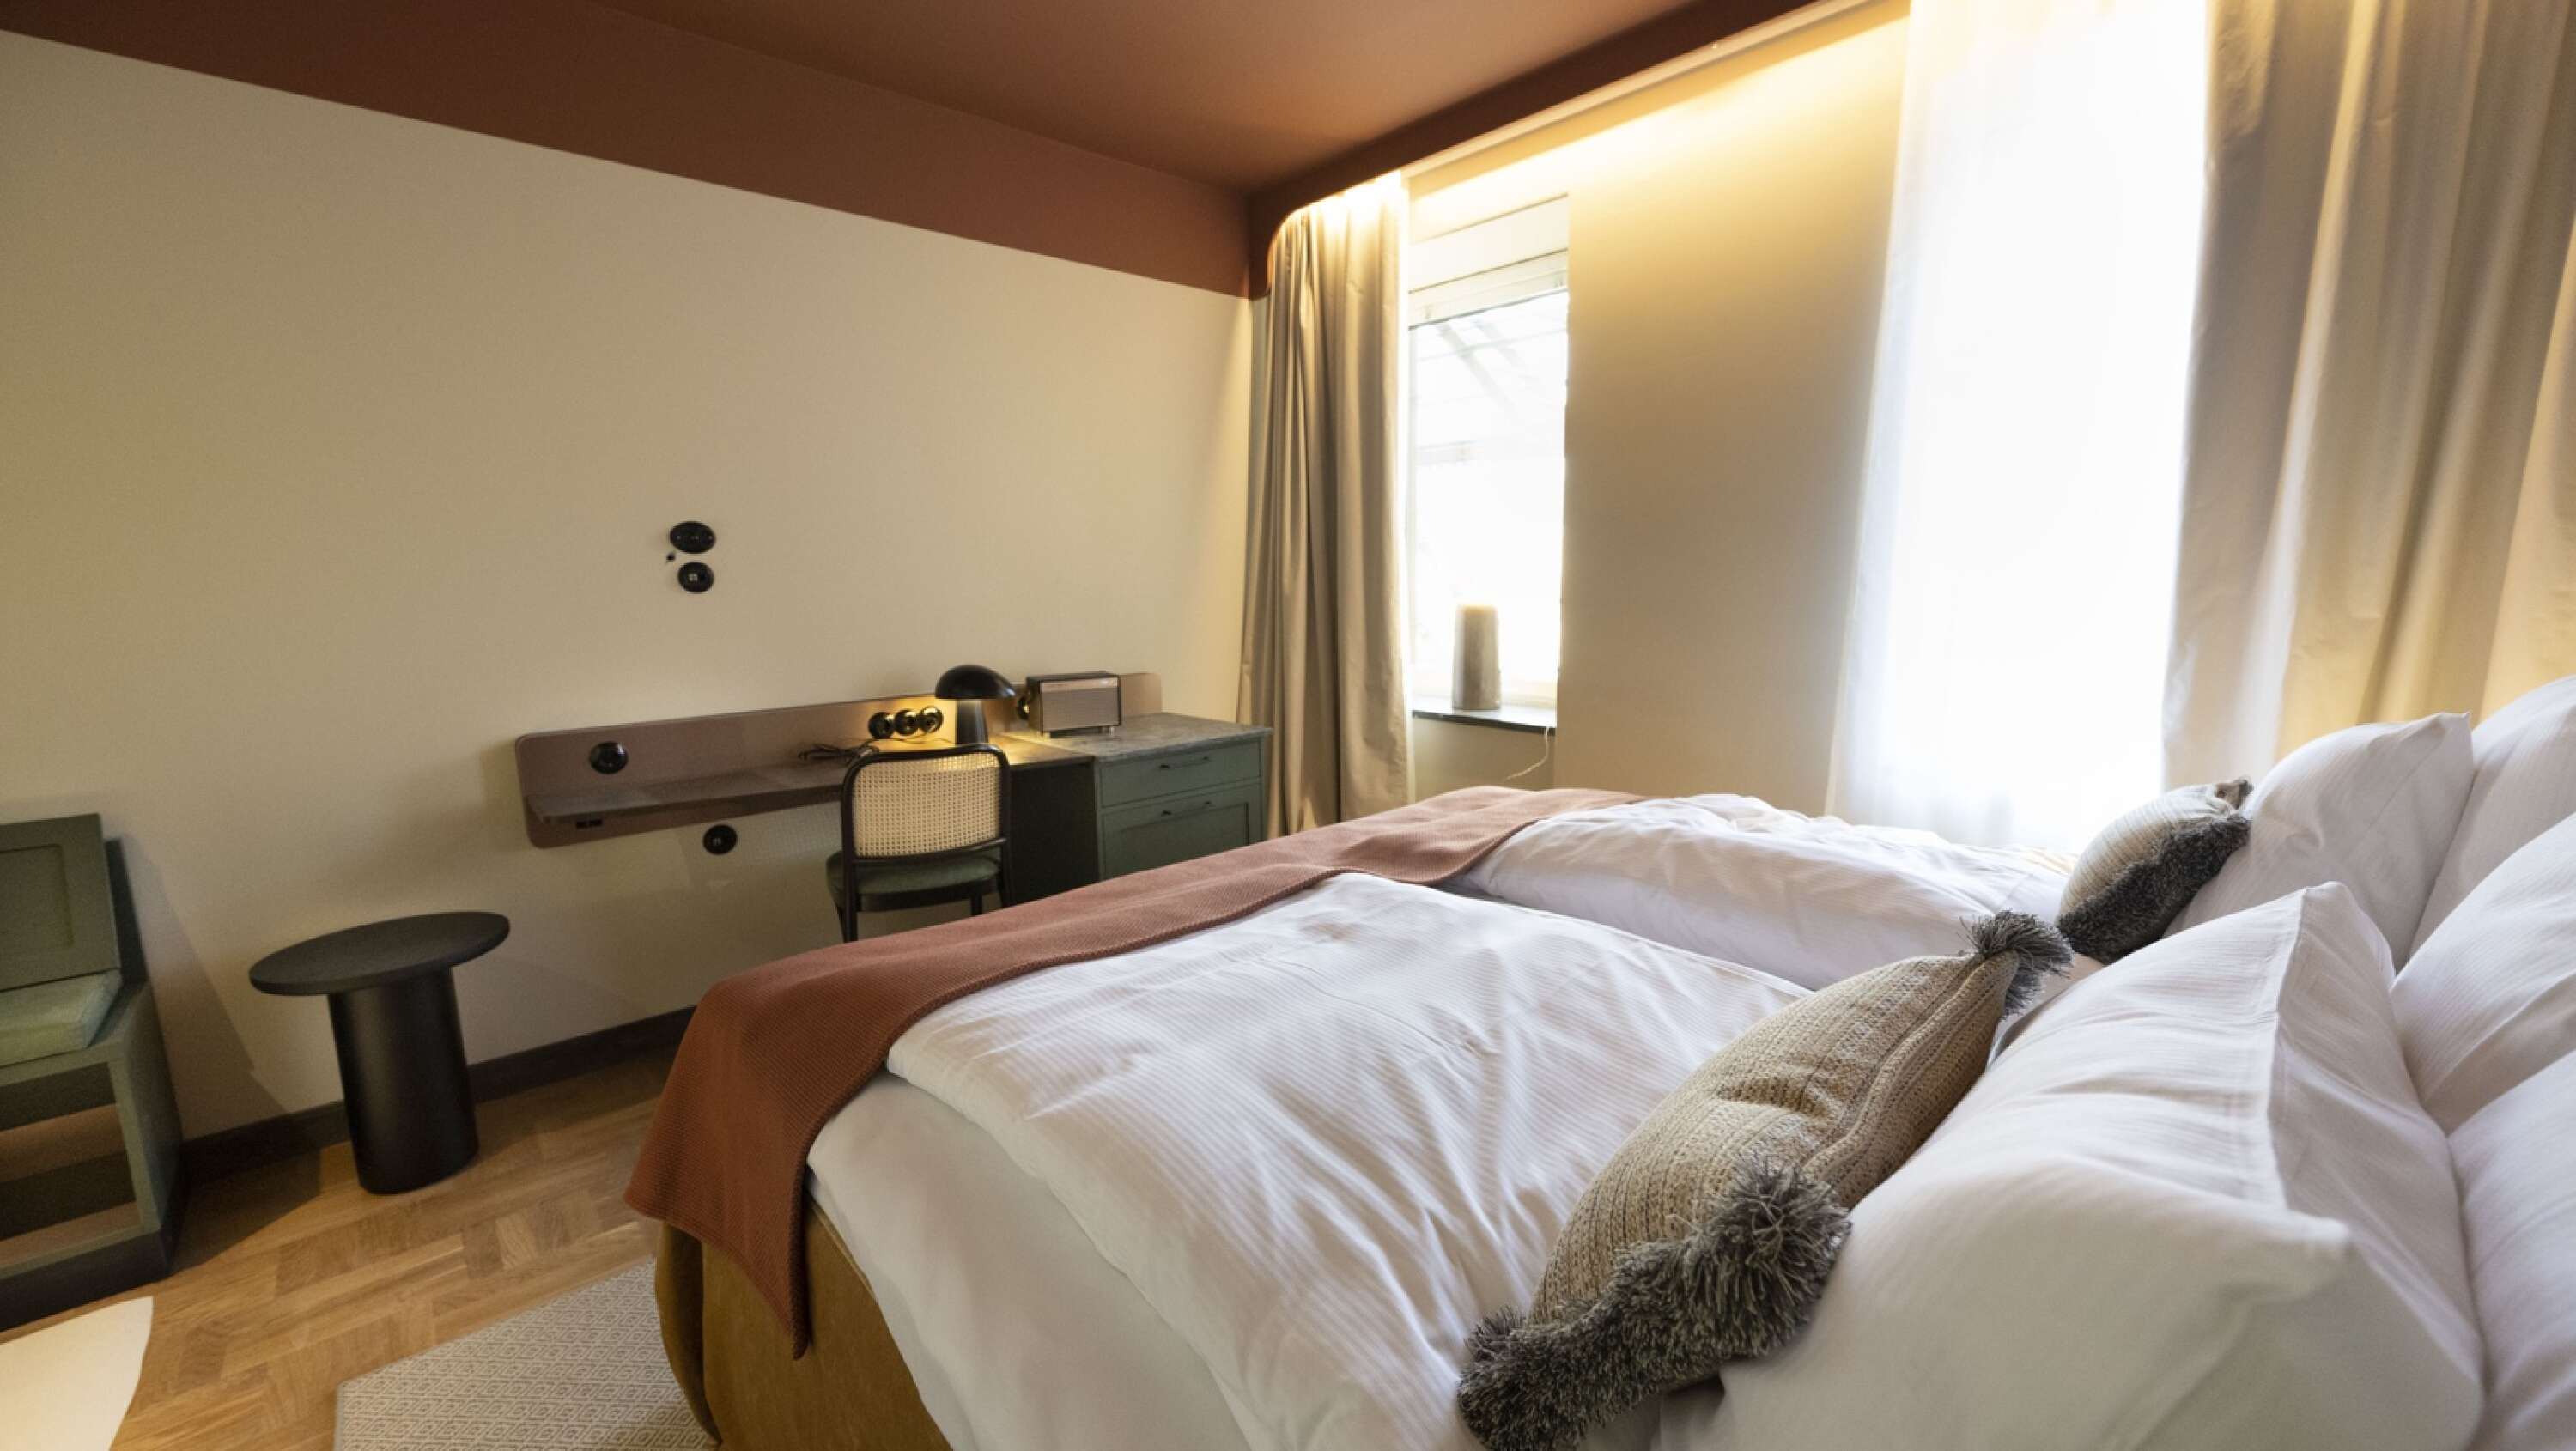 Rostrött tak och mossgrön sänggavel, rummen i Hotel Fratelli får mustiga färger.